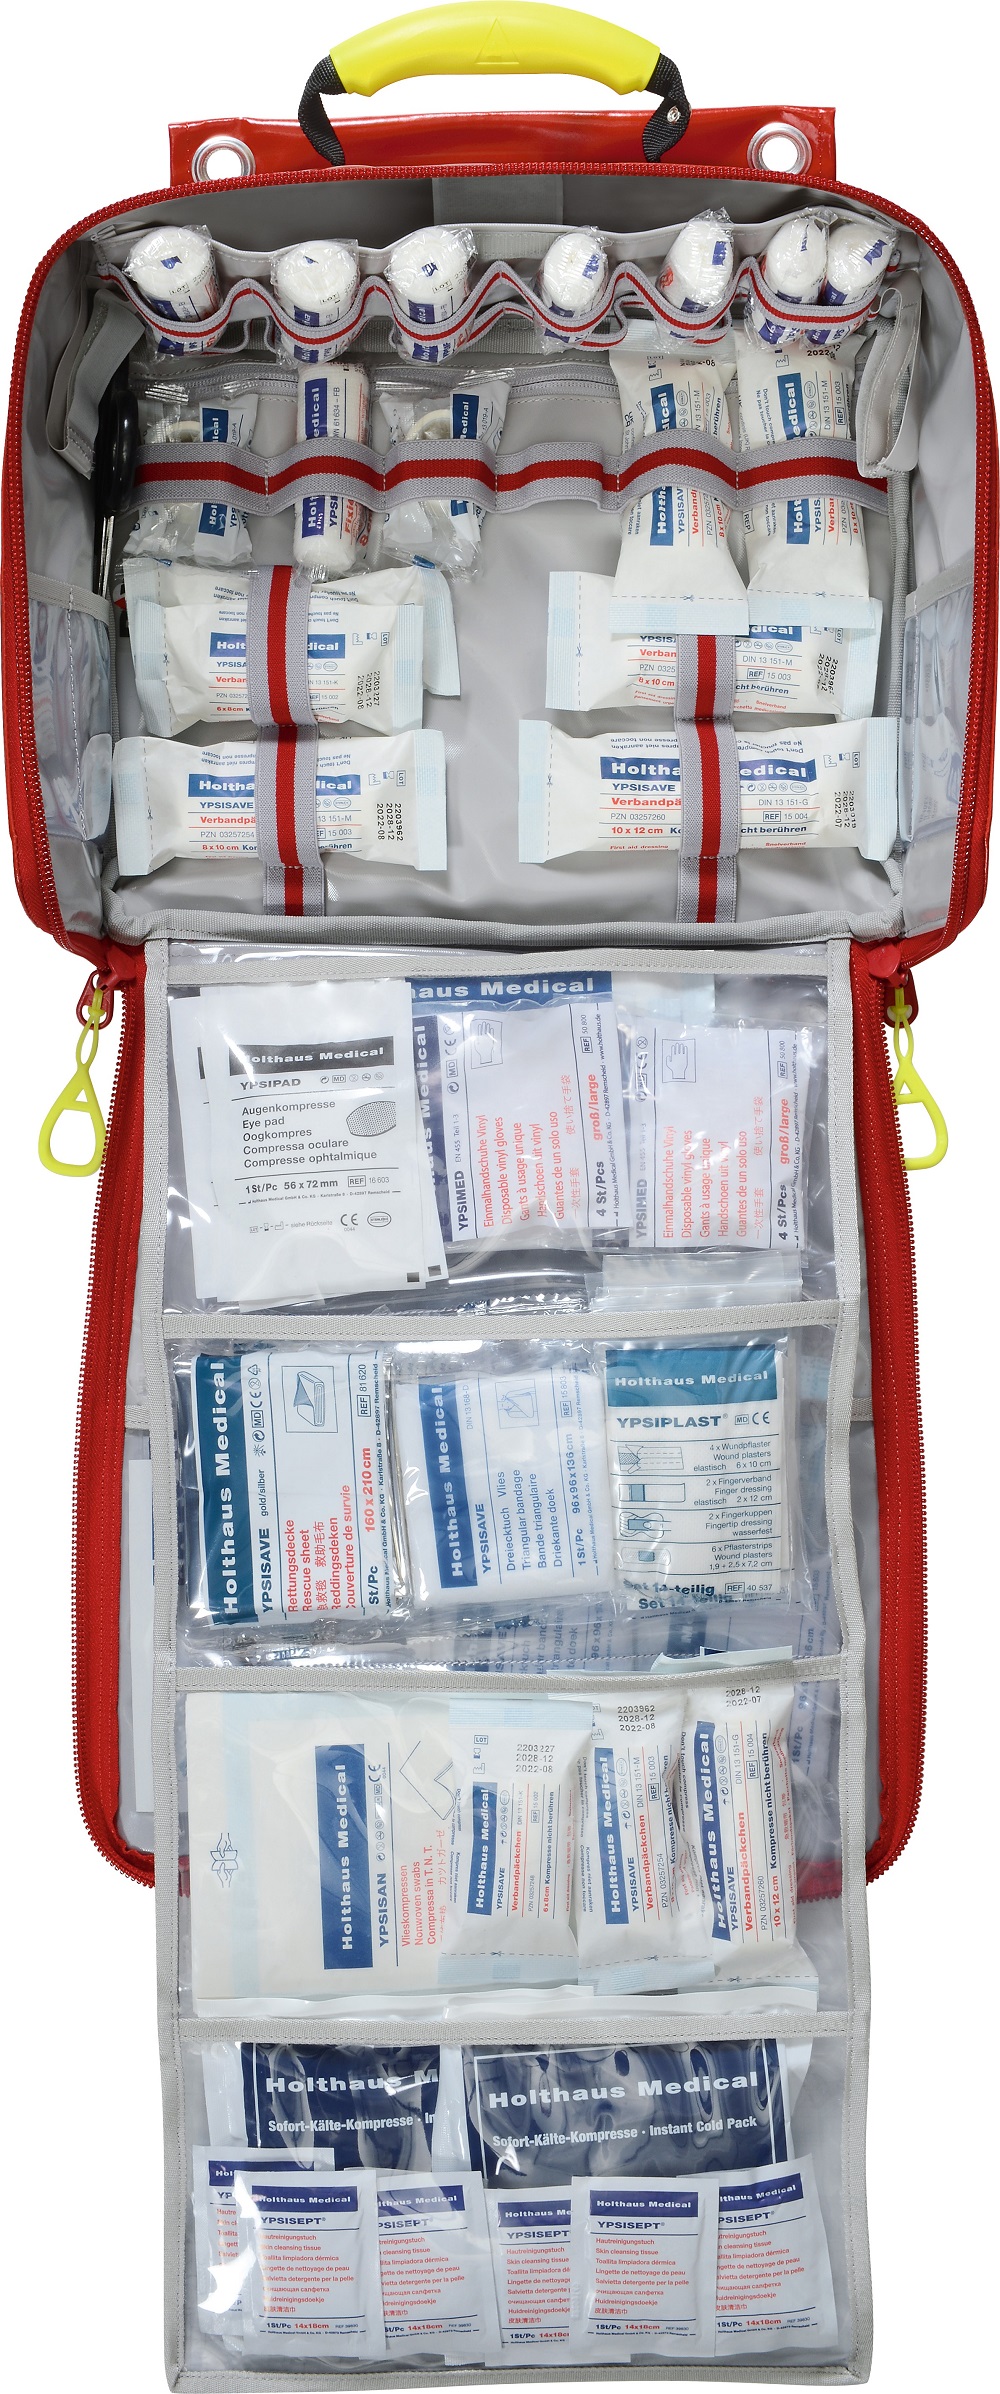 Holthaus Medical Erste-Hilfe-Tasche DIN 13169